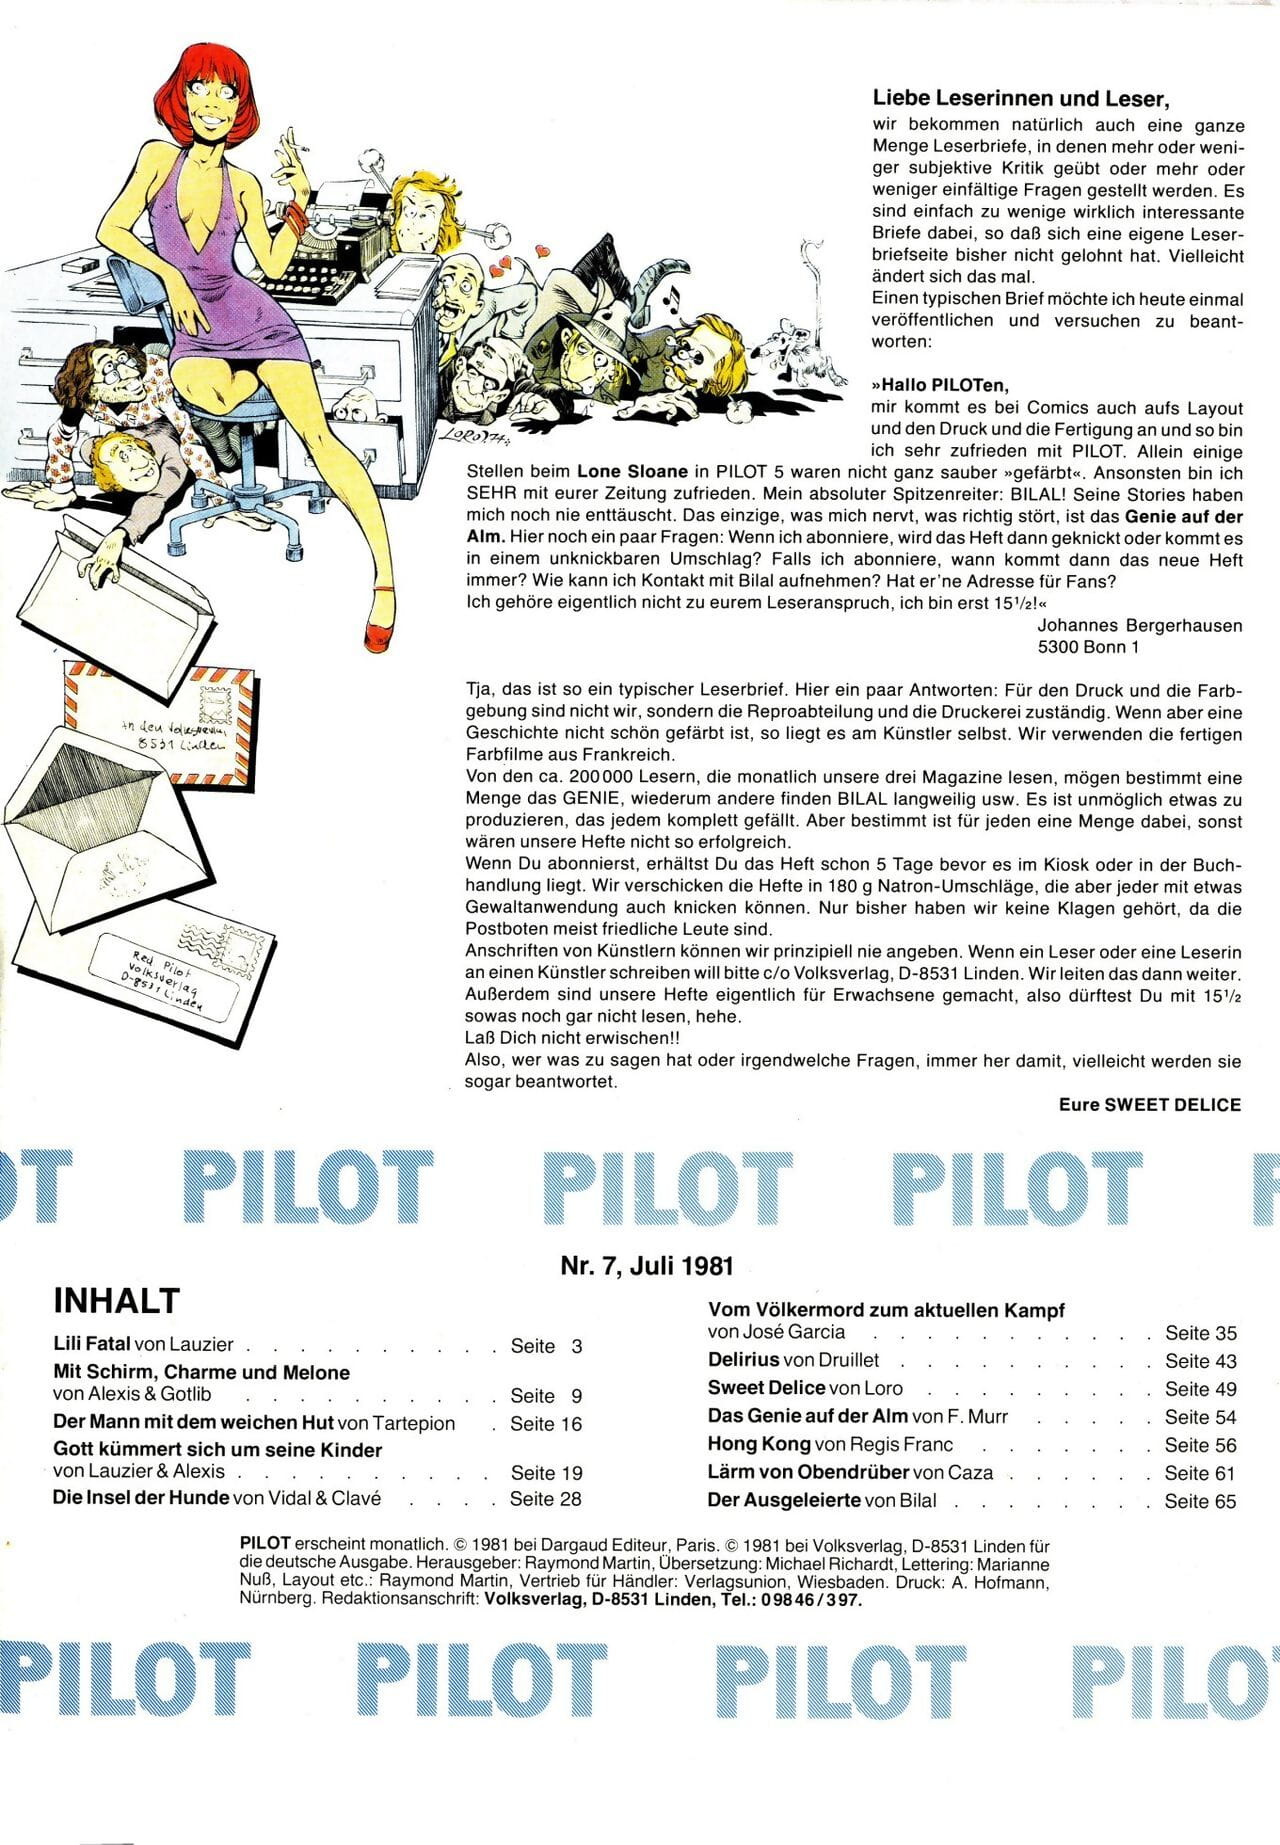 pilot #007 page 1